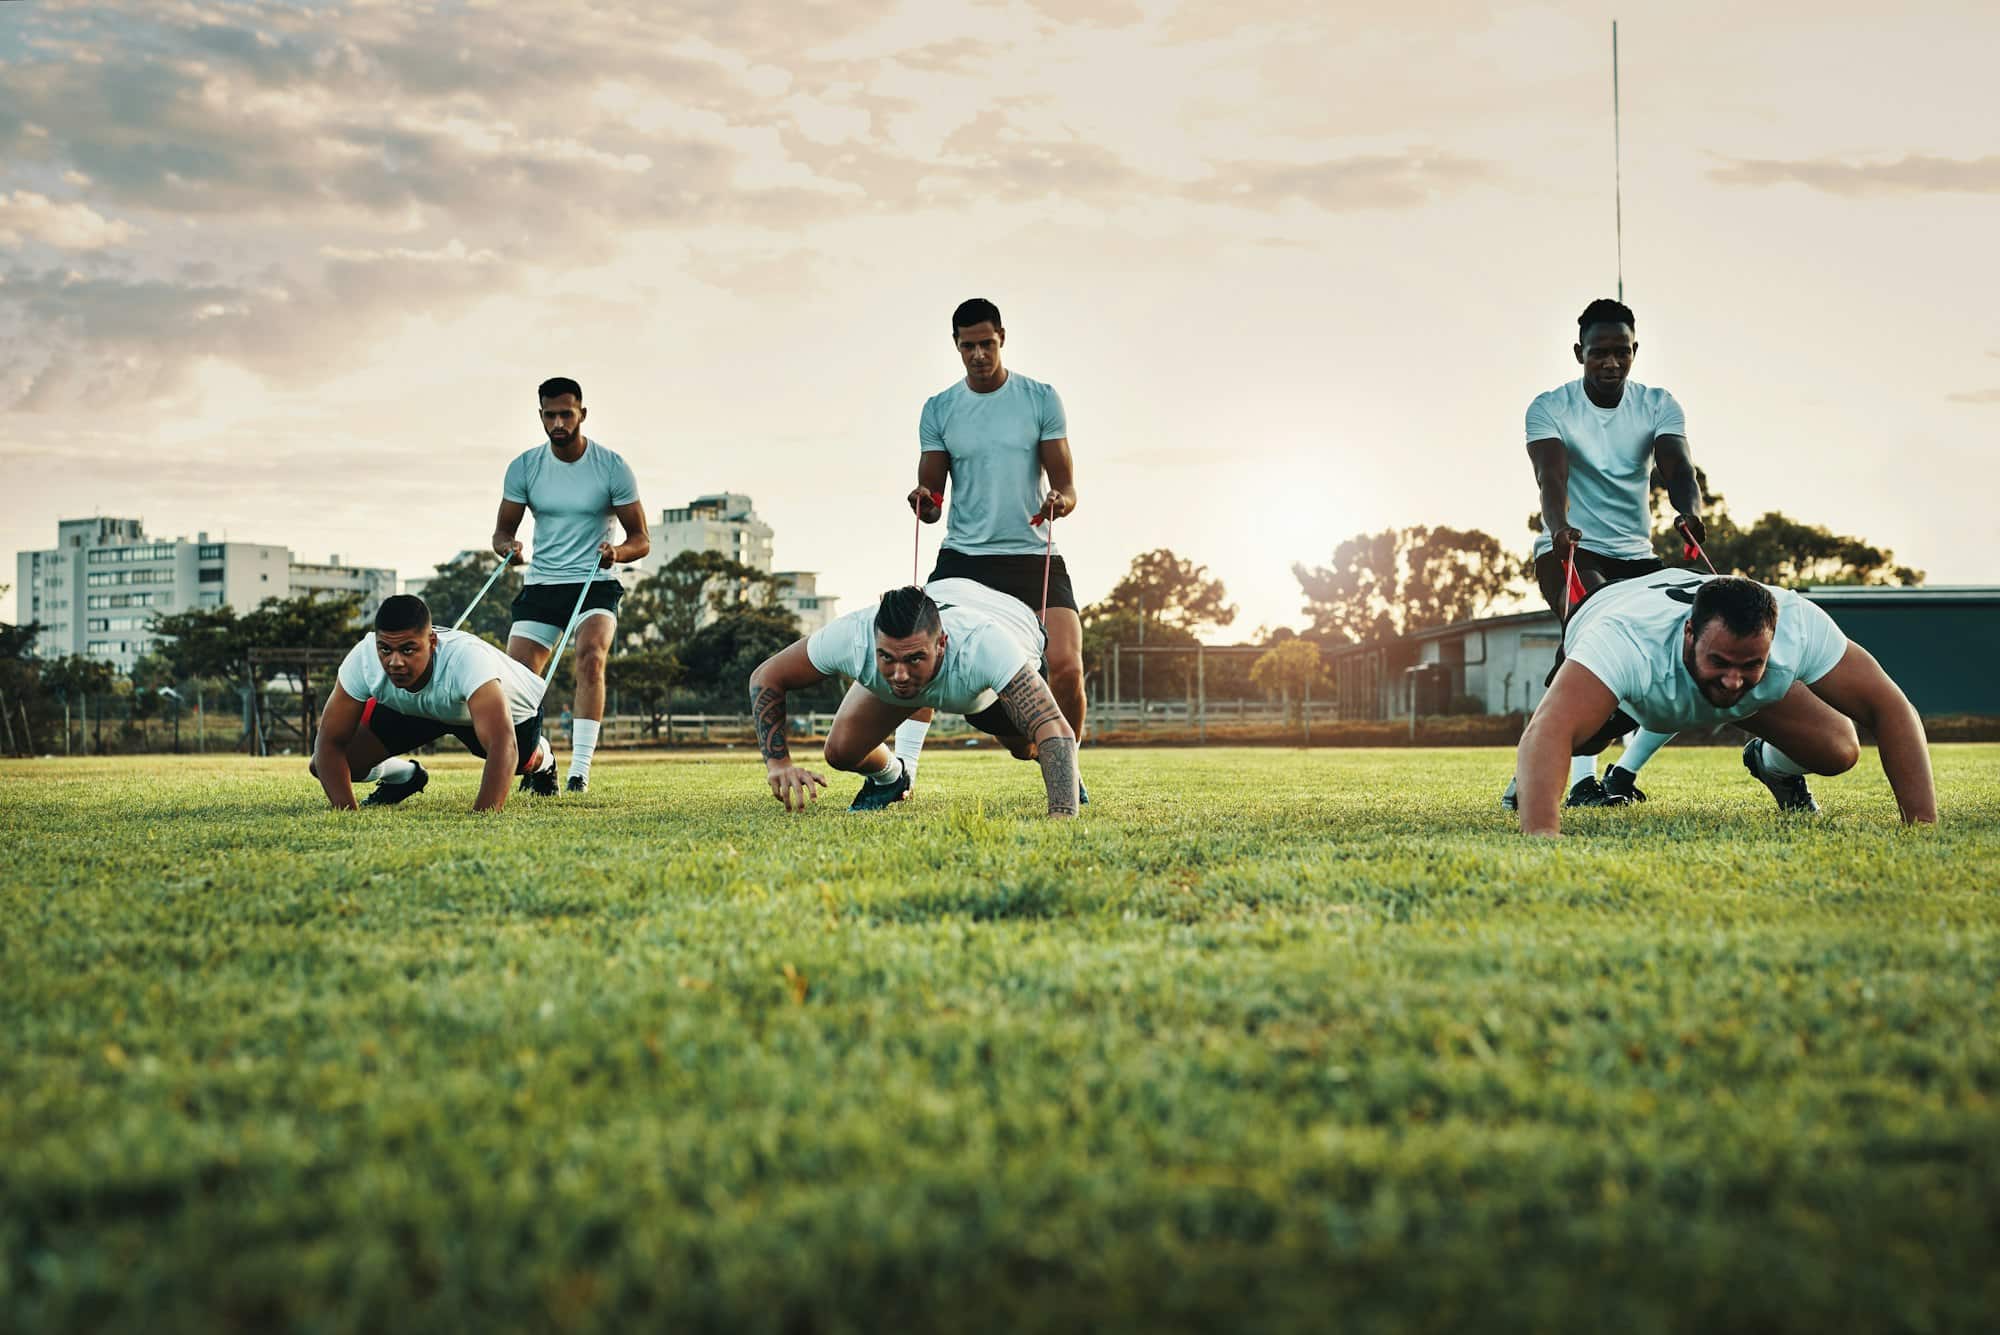 Inquadratura a tutta lunghezza di un gruppo di giovani giocatori di rugby che si allenano con le bande sul campo durante il giorno